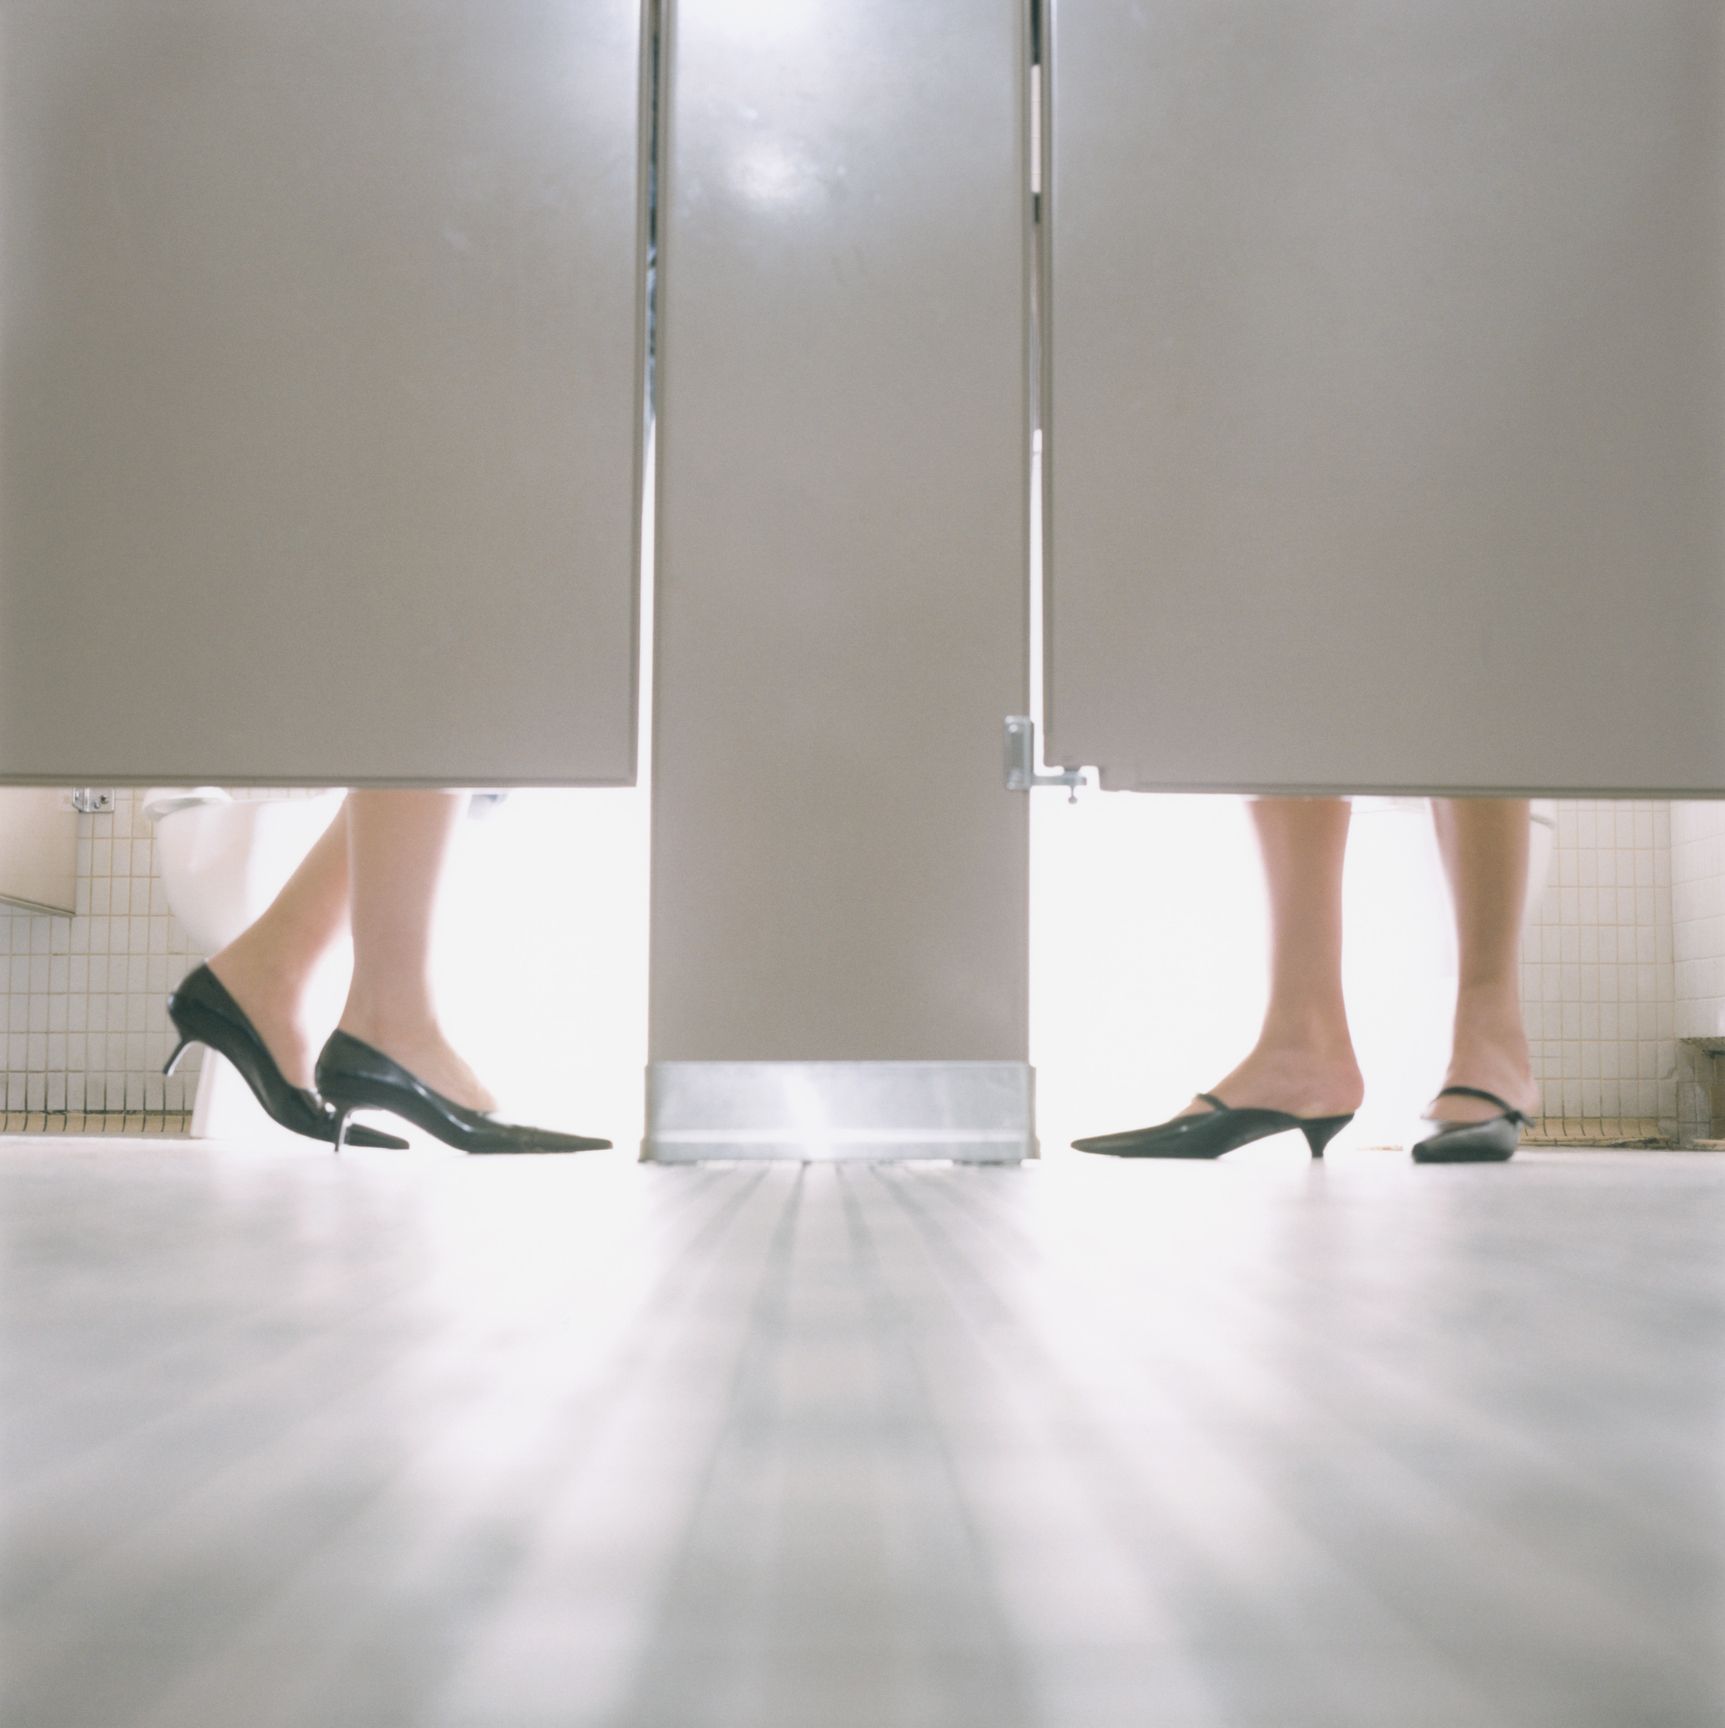 adi karyadi recommends girl pissing in toilet pic